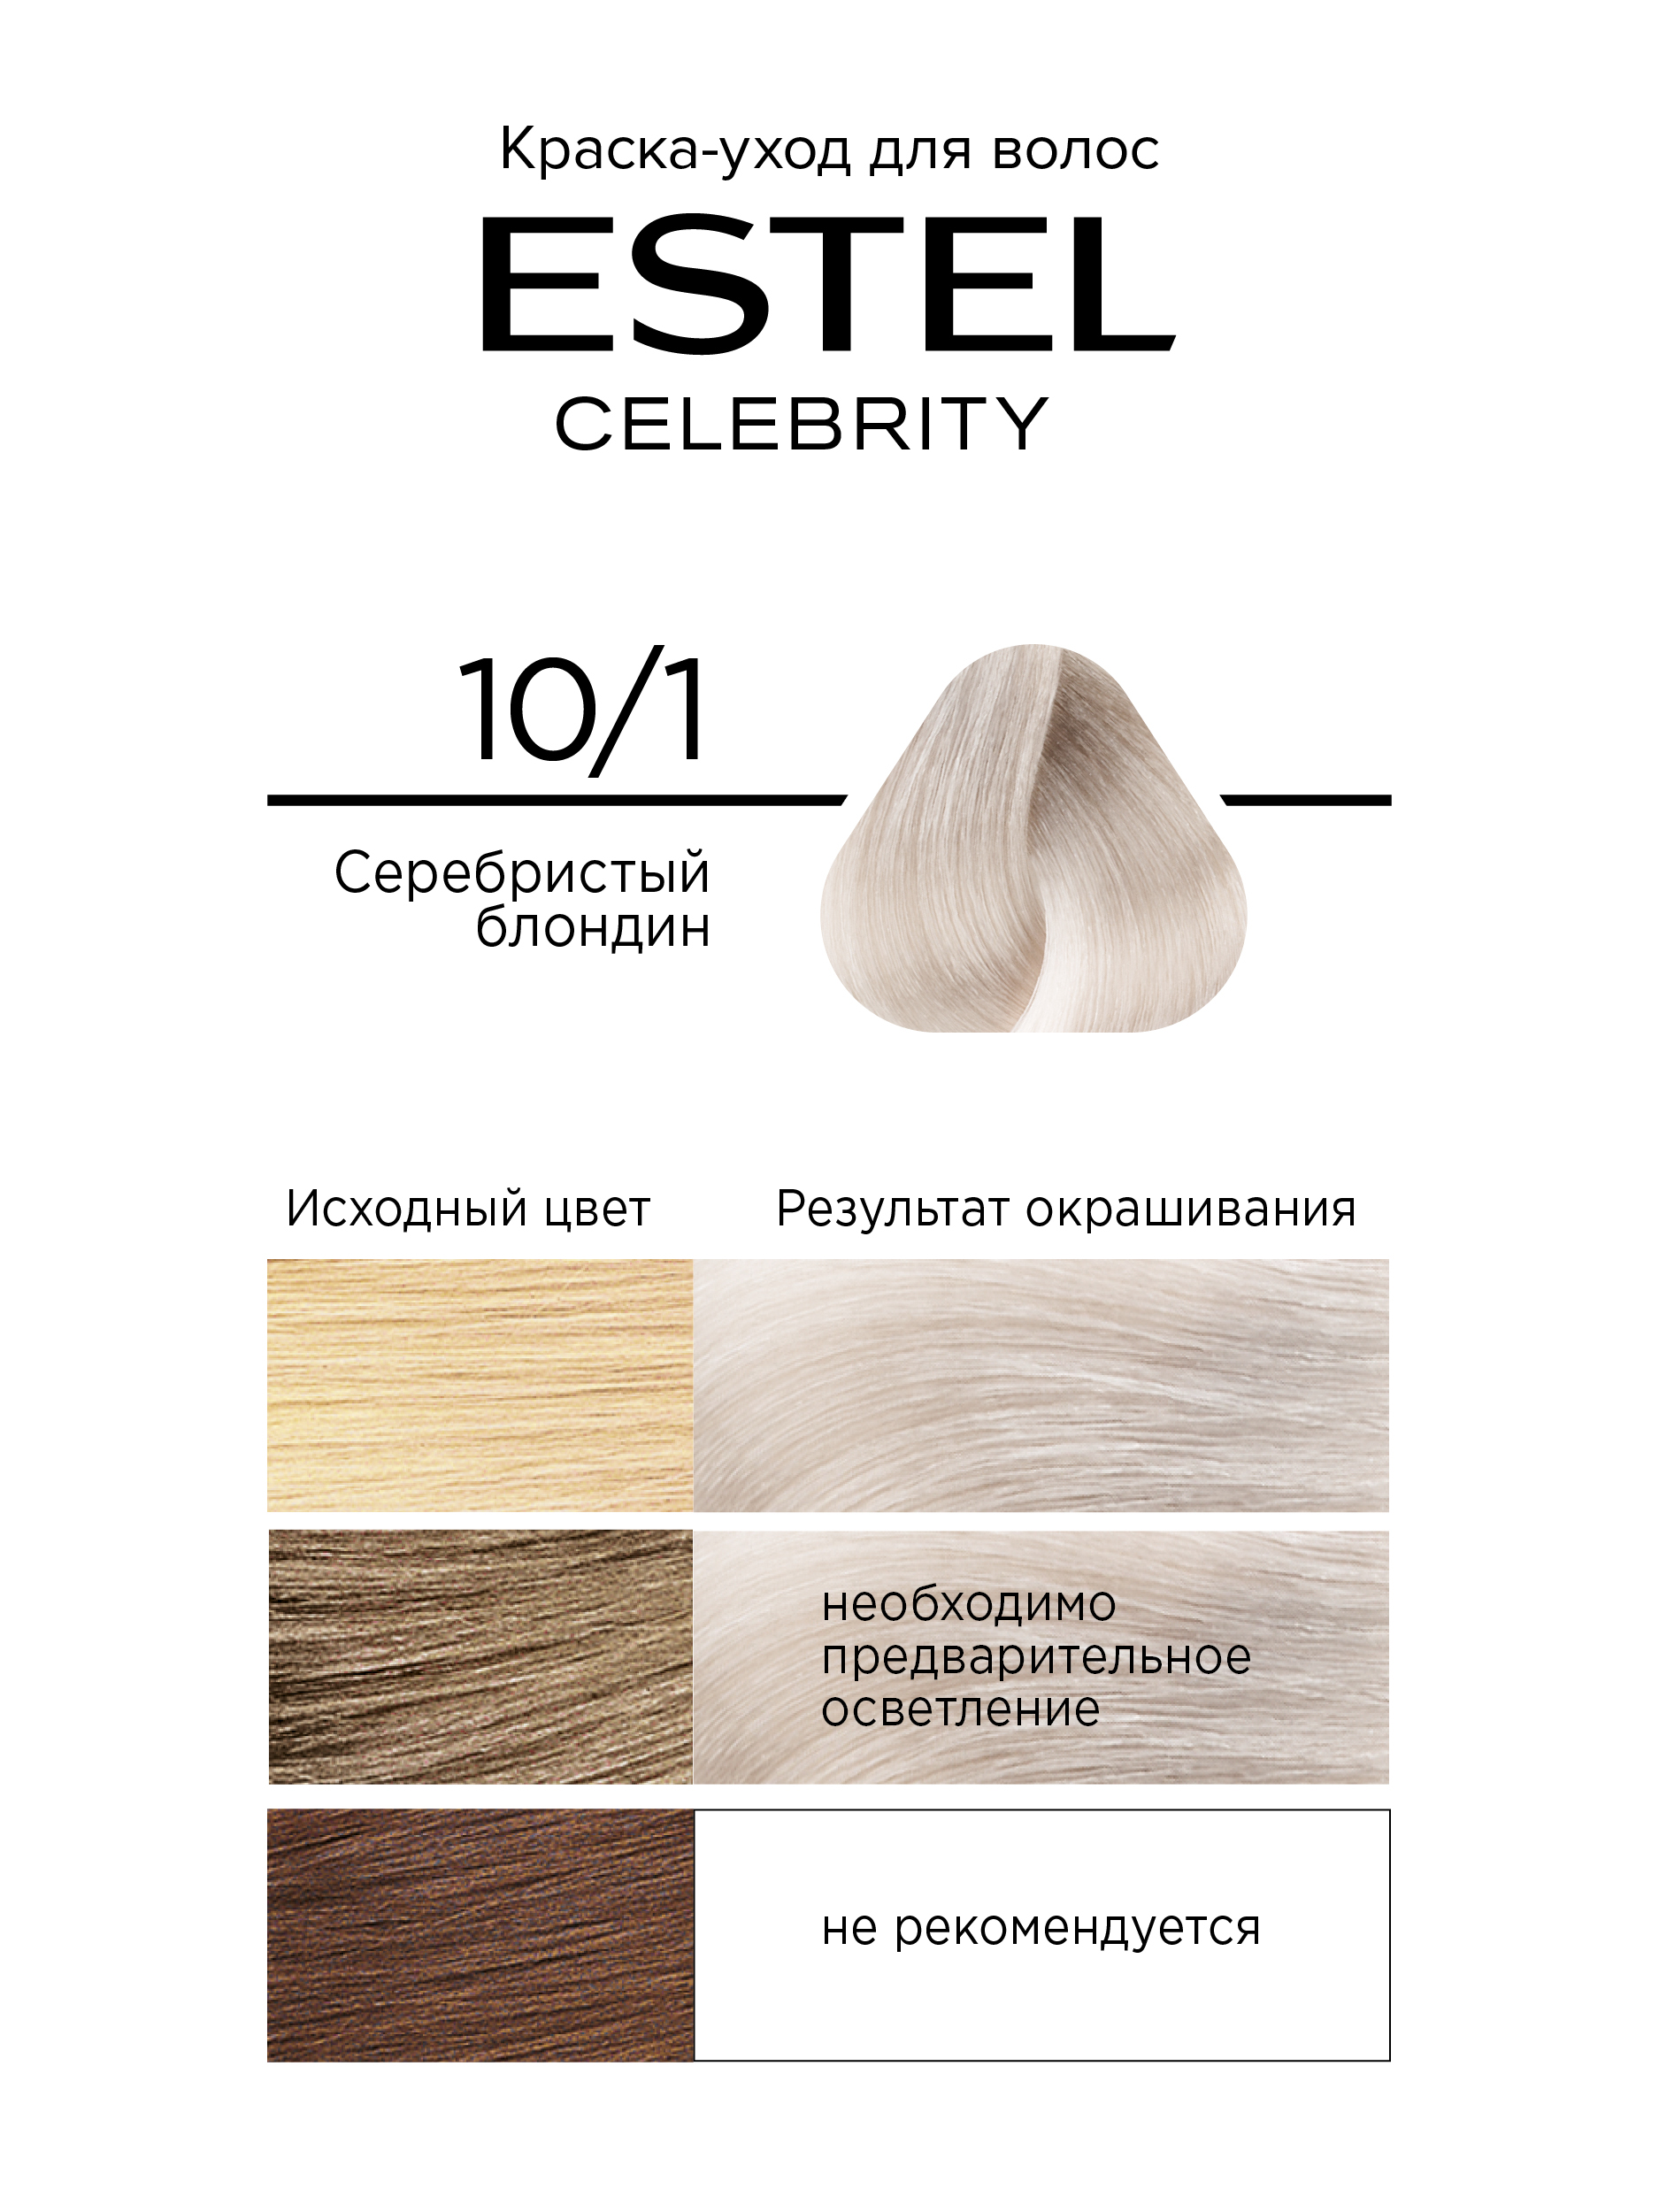 Краска для волос Estel Celebrity тон 10.1 серебристый блондин